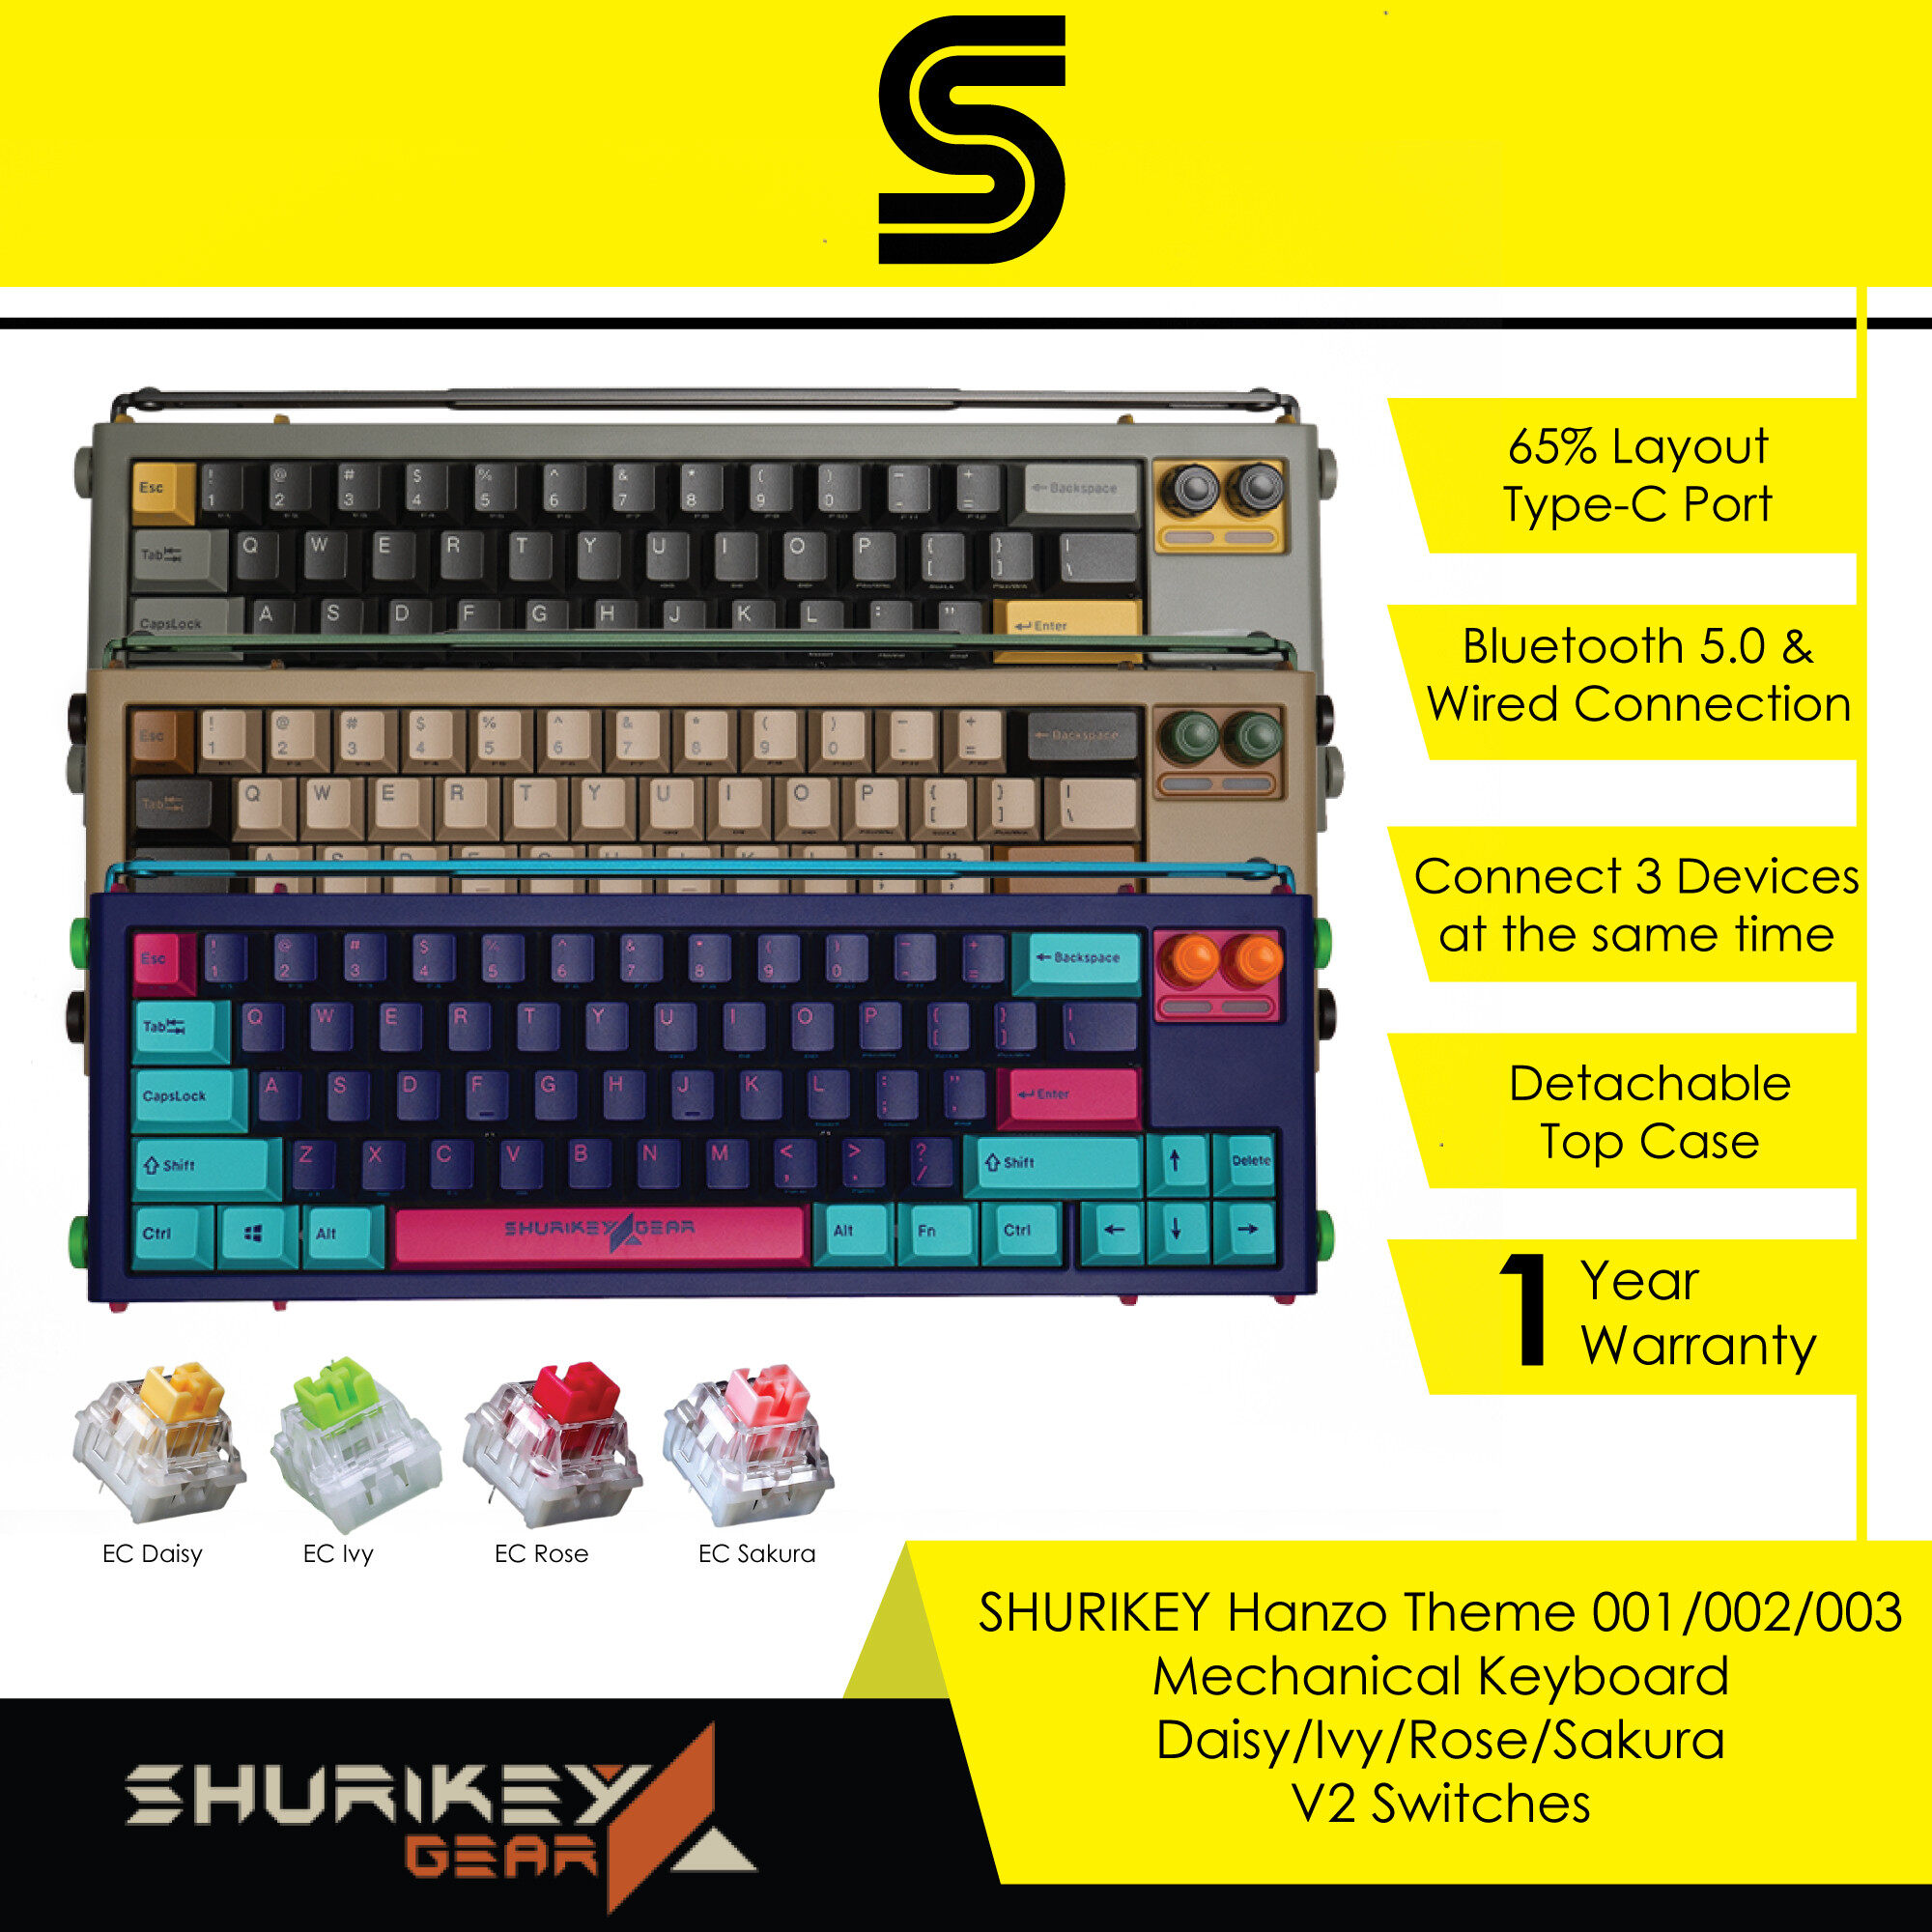 SHURIKEY GEAR Hanzo Theme 001/002/003 Mechanical Keyboard - Daisy/Ivy/Rose/Sakura V2 Switches